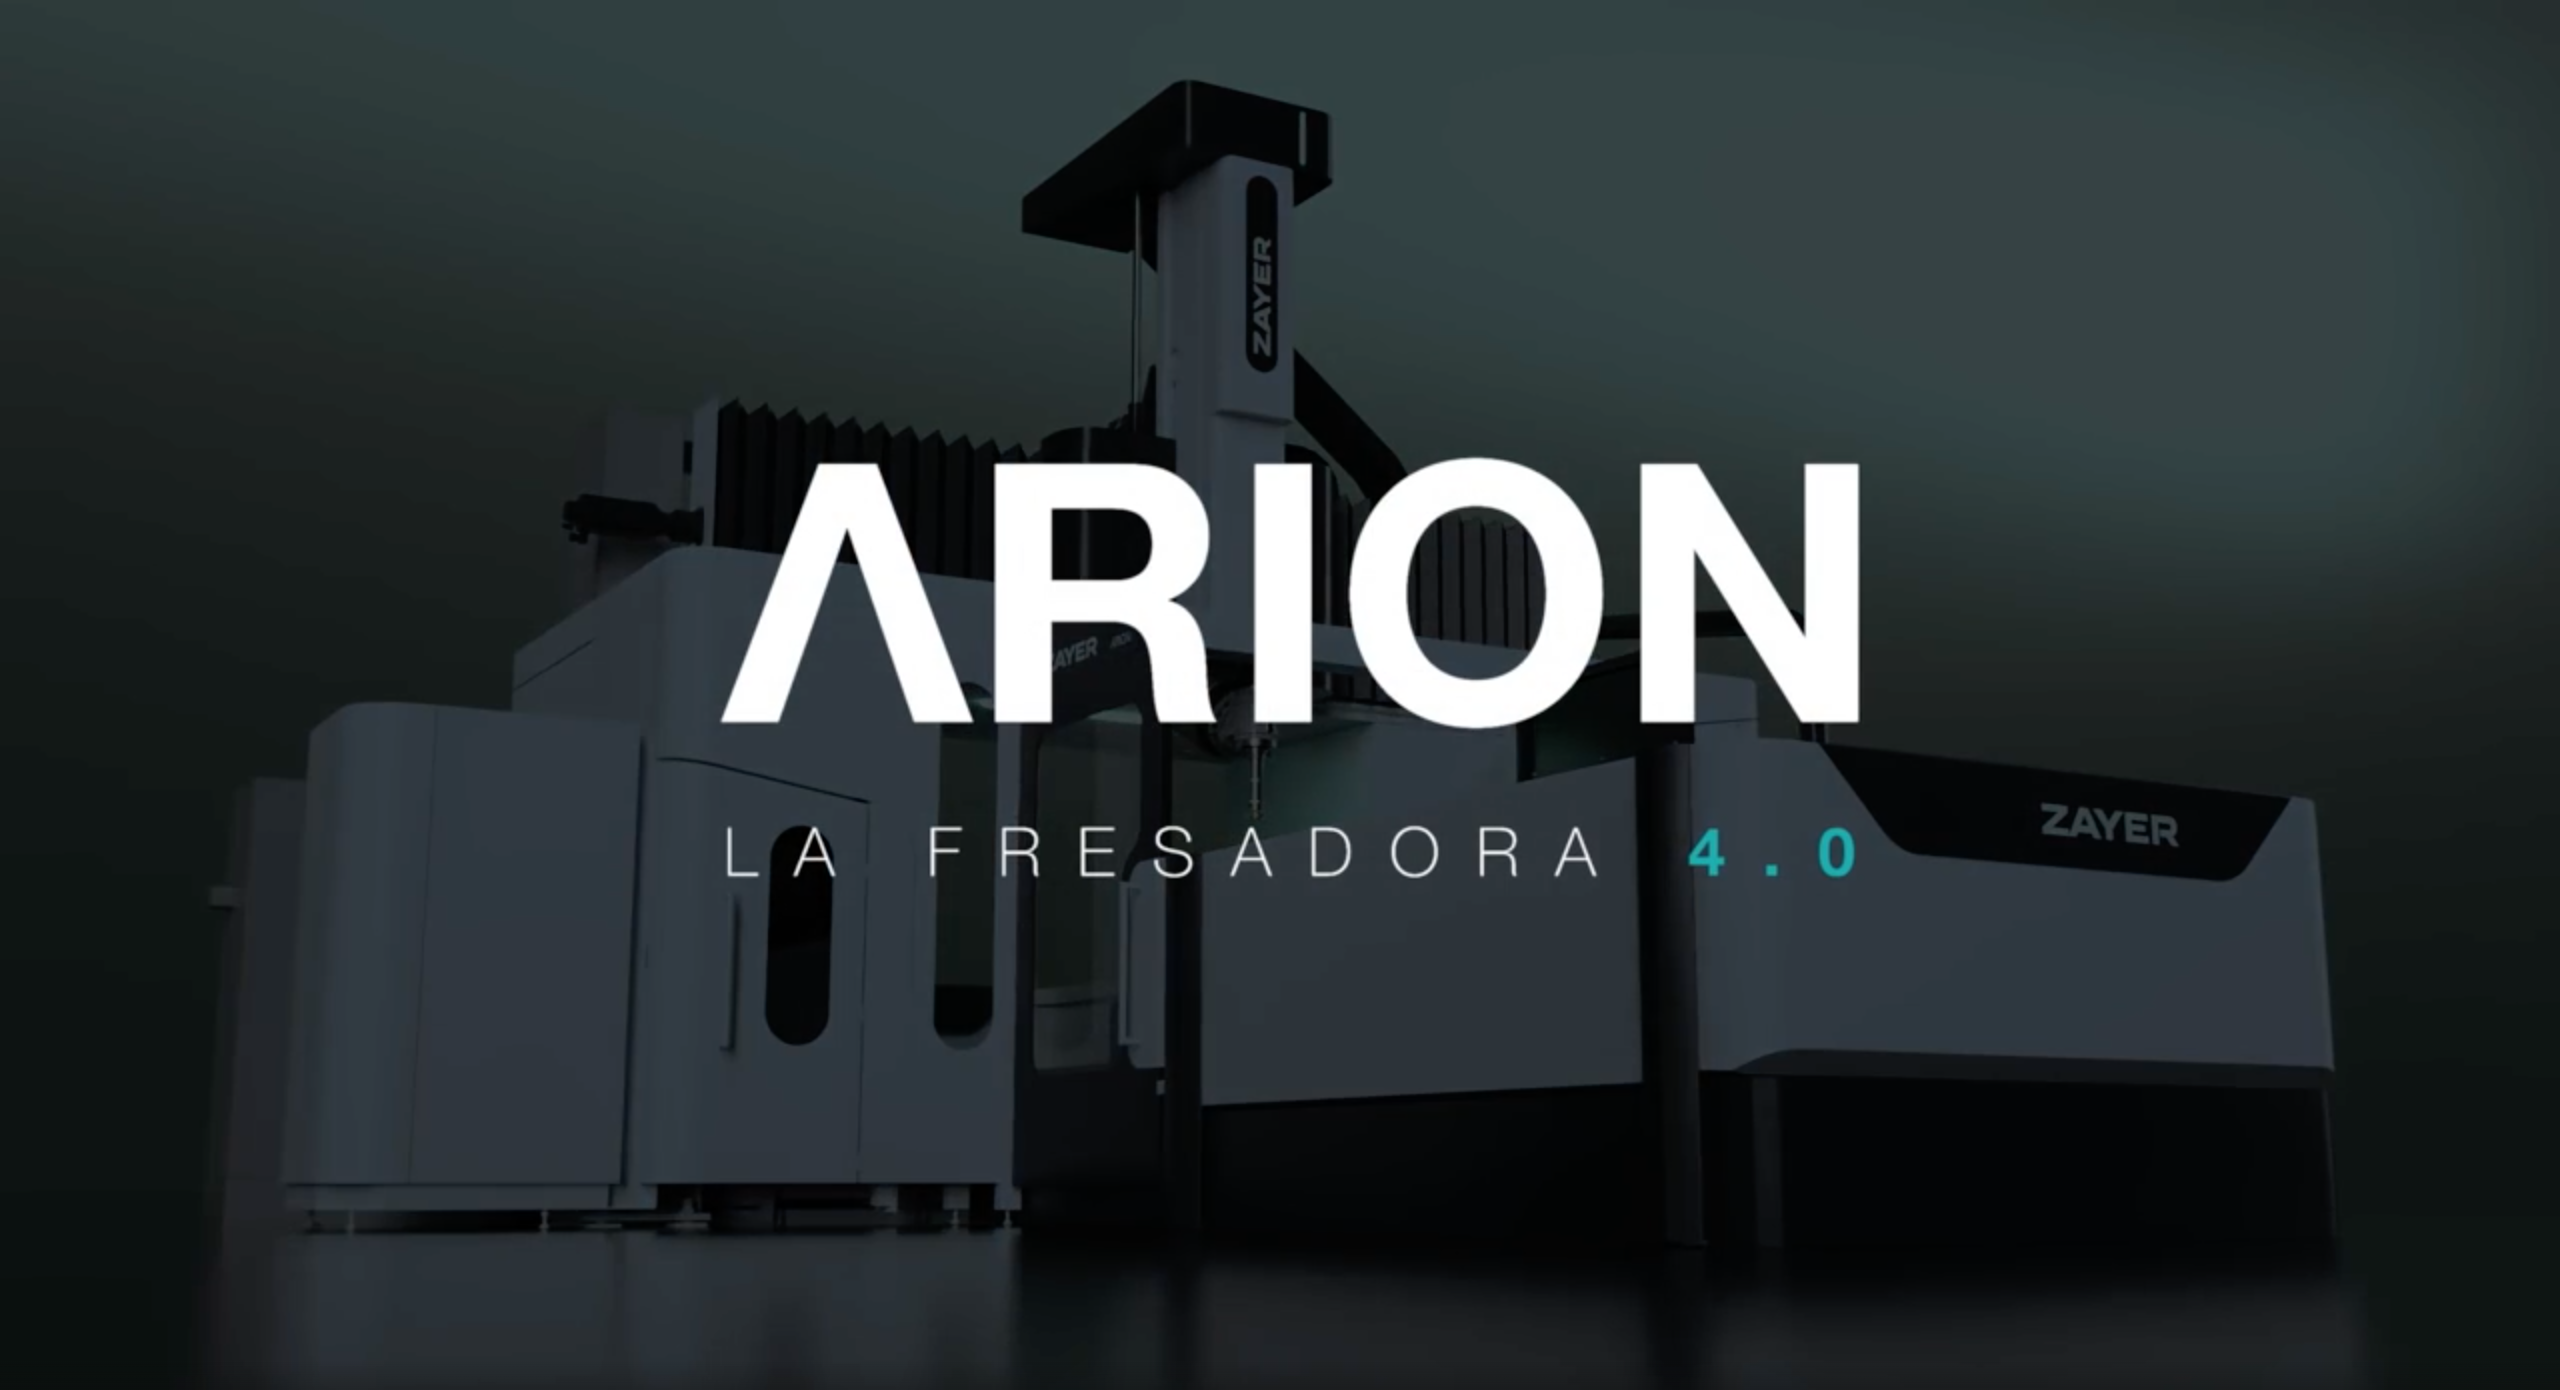 ARION LA FRESADORA 4.0